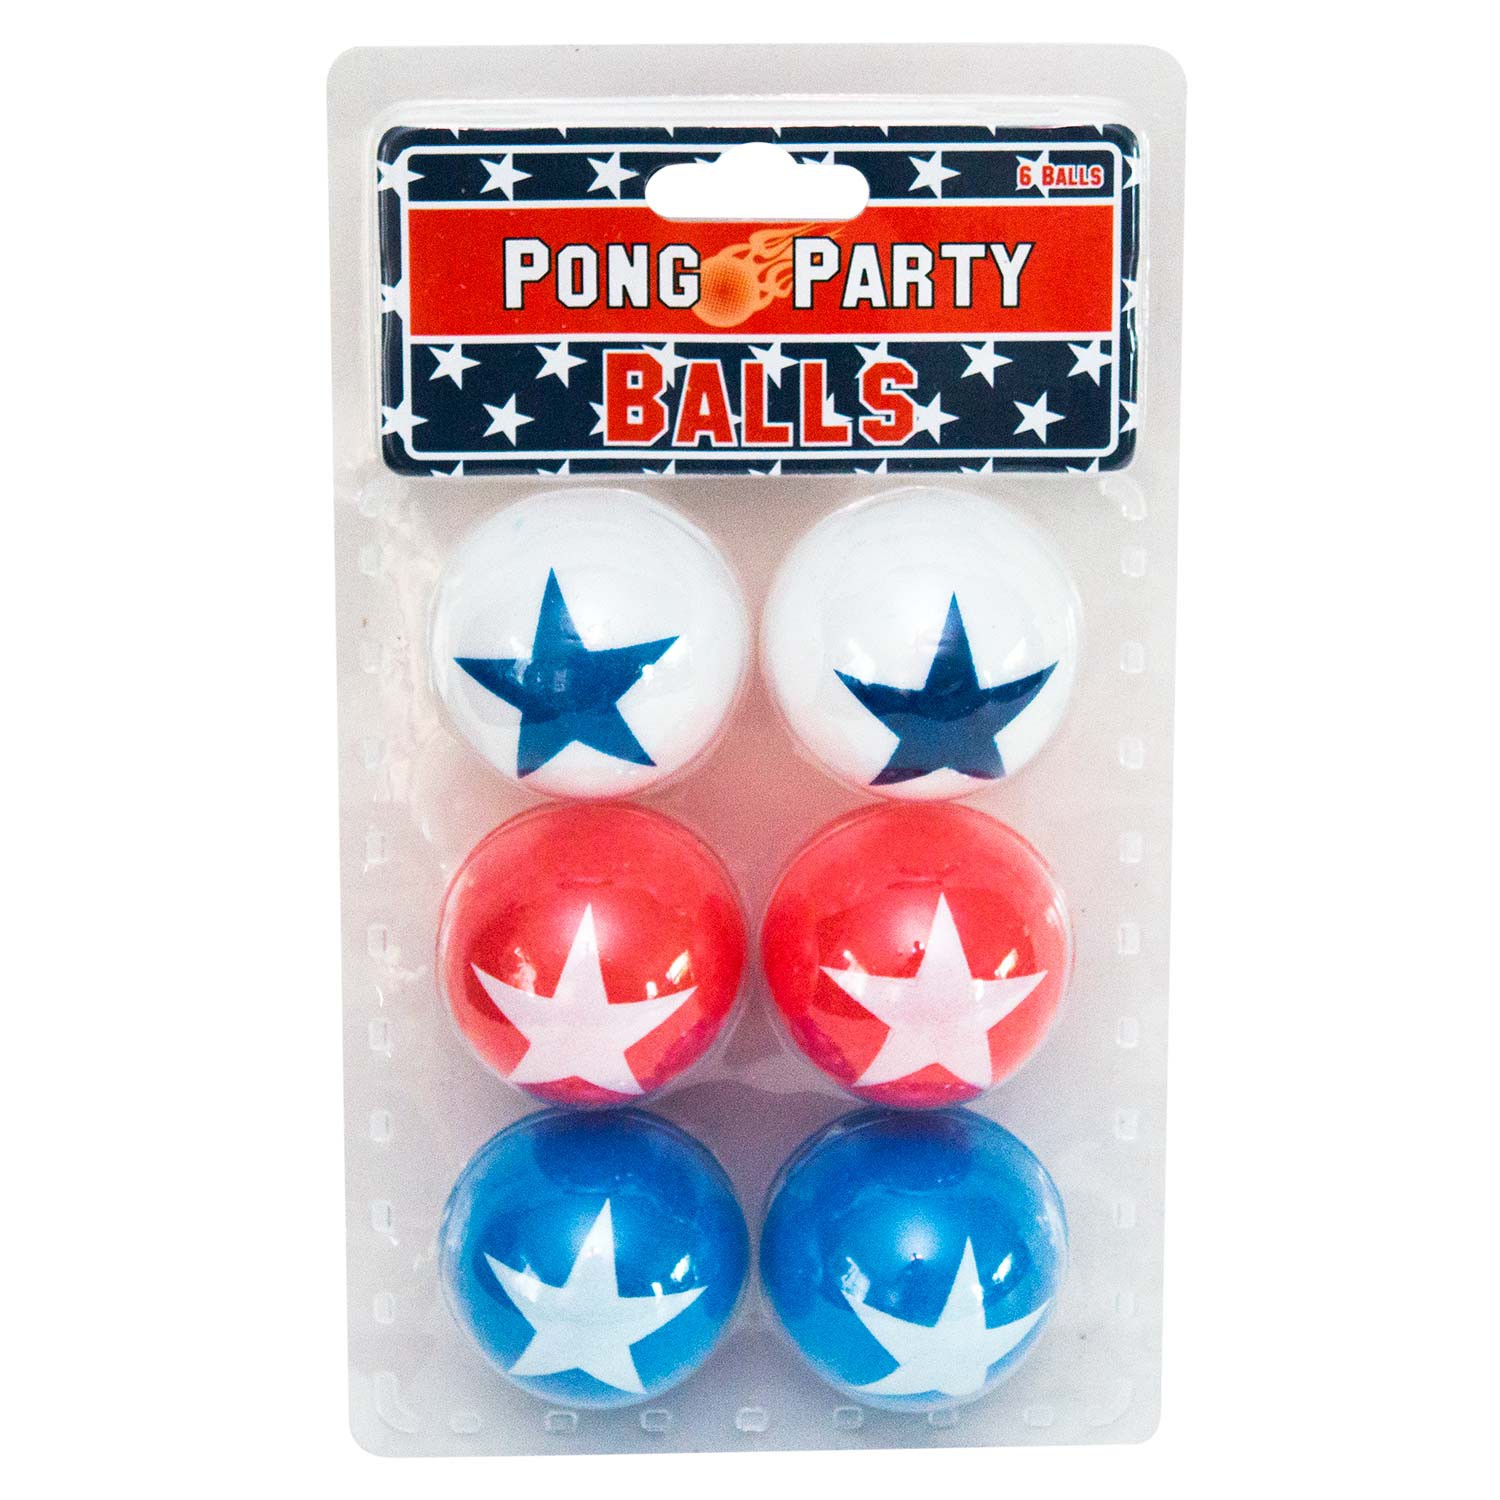 Шарики для пинг понга деловая игра. Balls Party. USA balls. Party balls